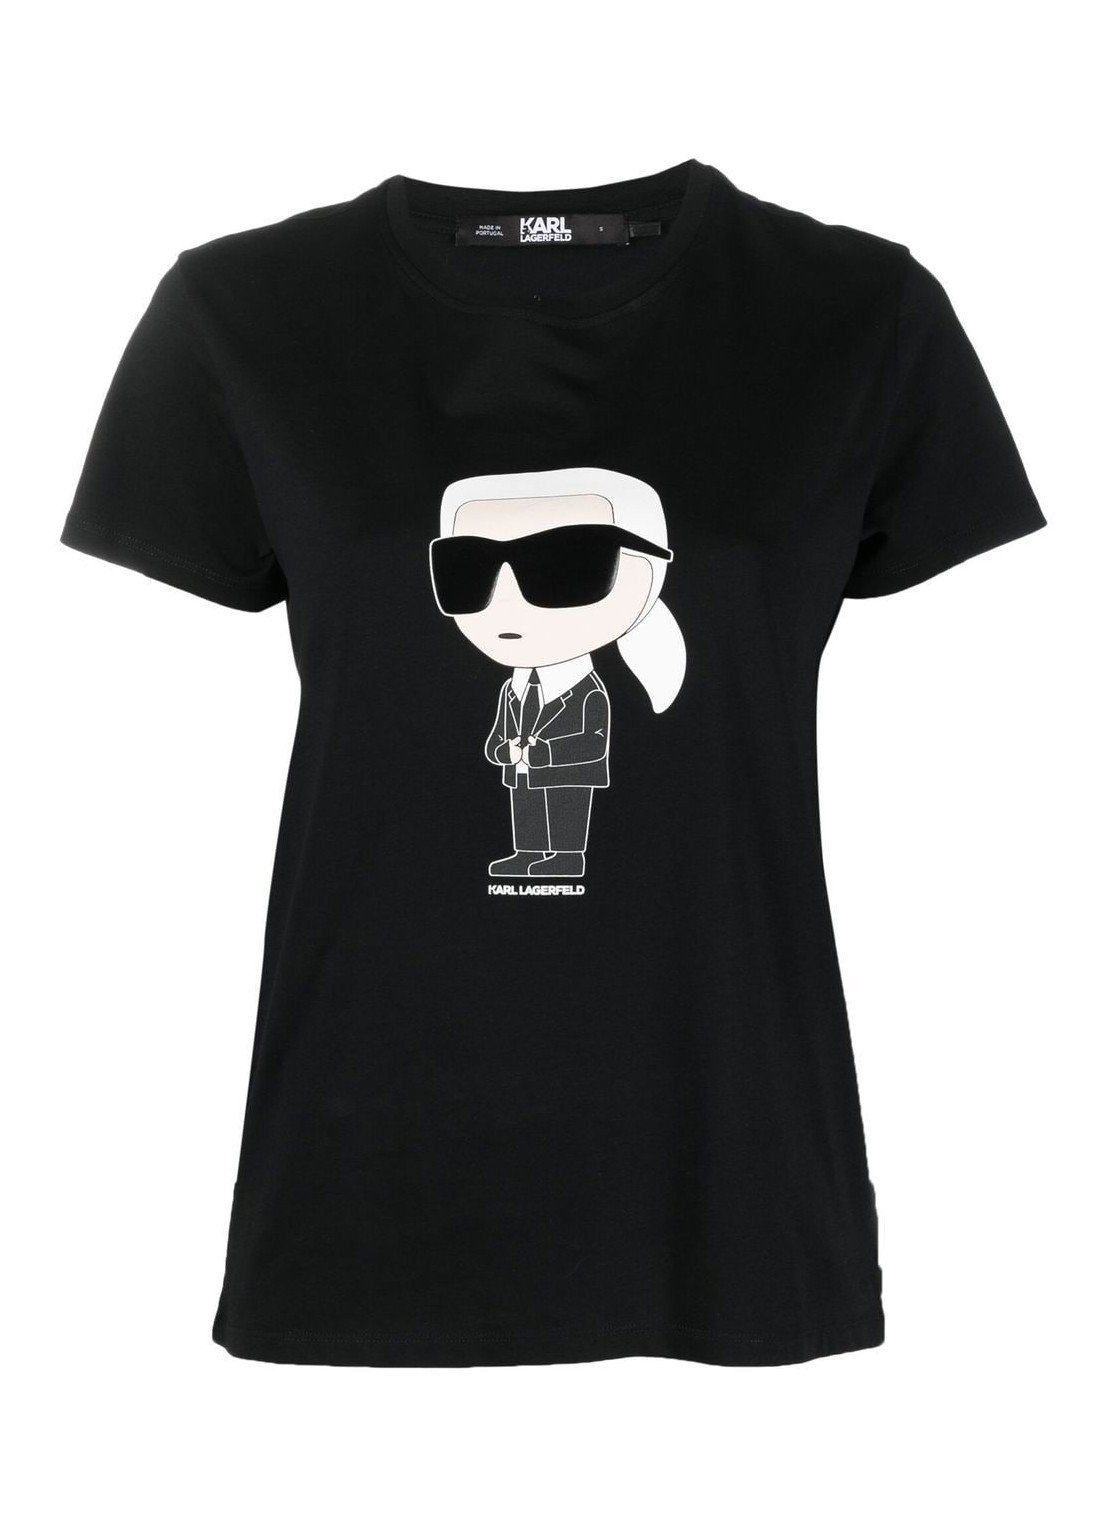 Top karl lagerfeld top woman ikonik 2.0 karl t-shirt 230w1700 999 talla XL
 